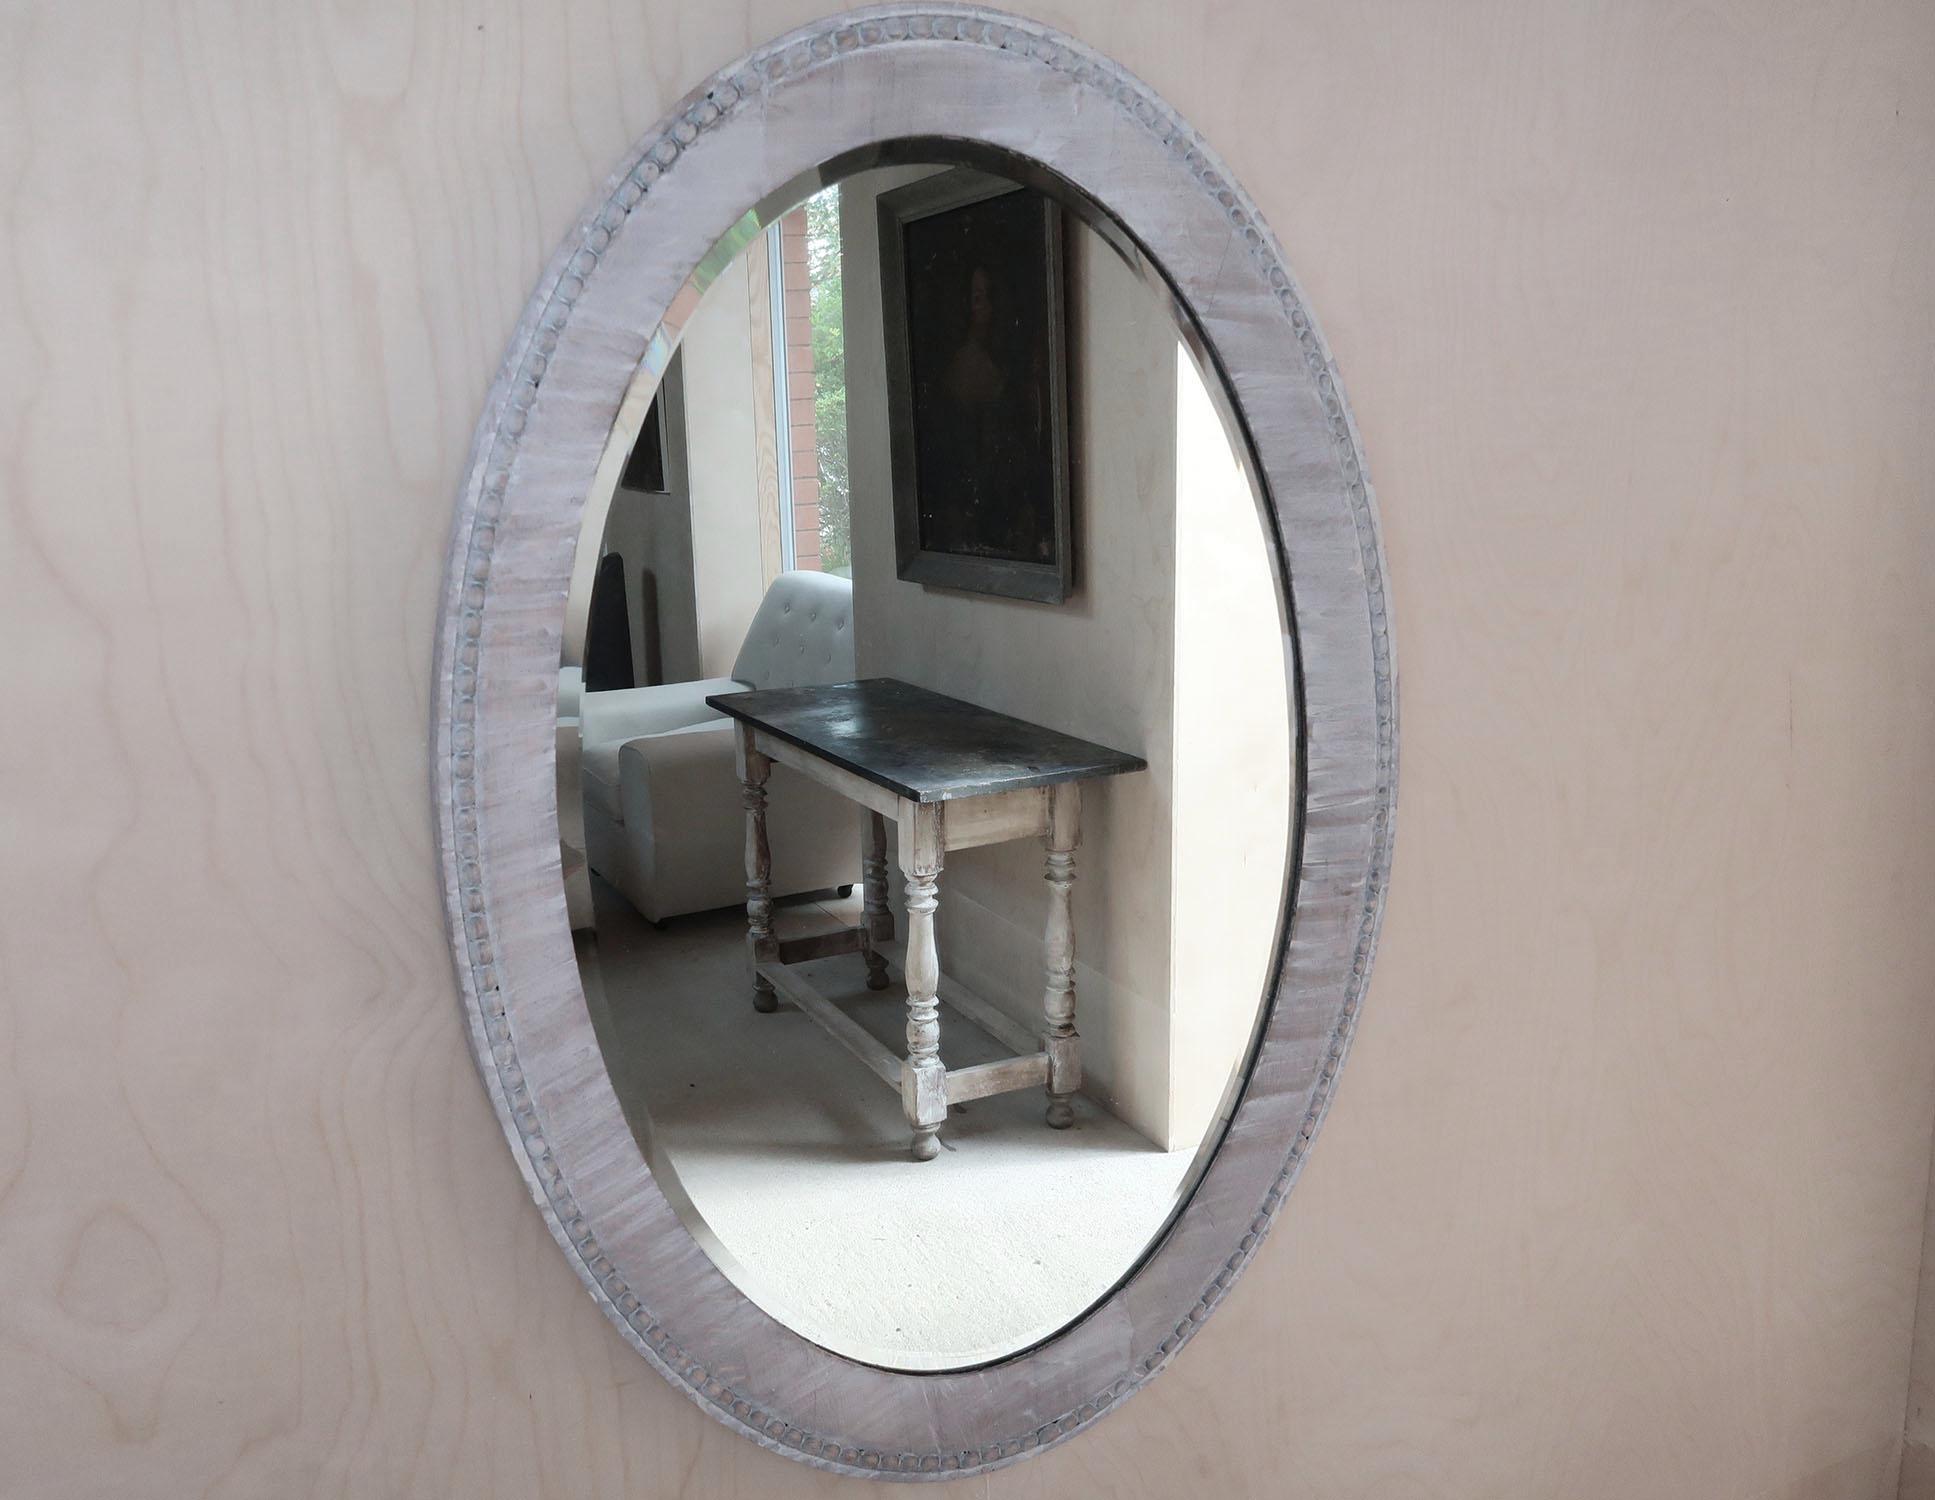 Joli miroir en chêne chaulé

Très simple, avec juste un joli bord godronné sur le cadre.

Dans le style baroque 

Récemment chaulé.

Miroir biseauté d'origine

Livraison gratuite au Royaume-Uni